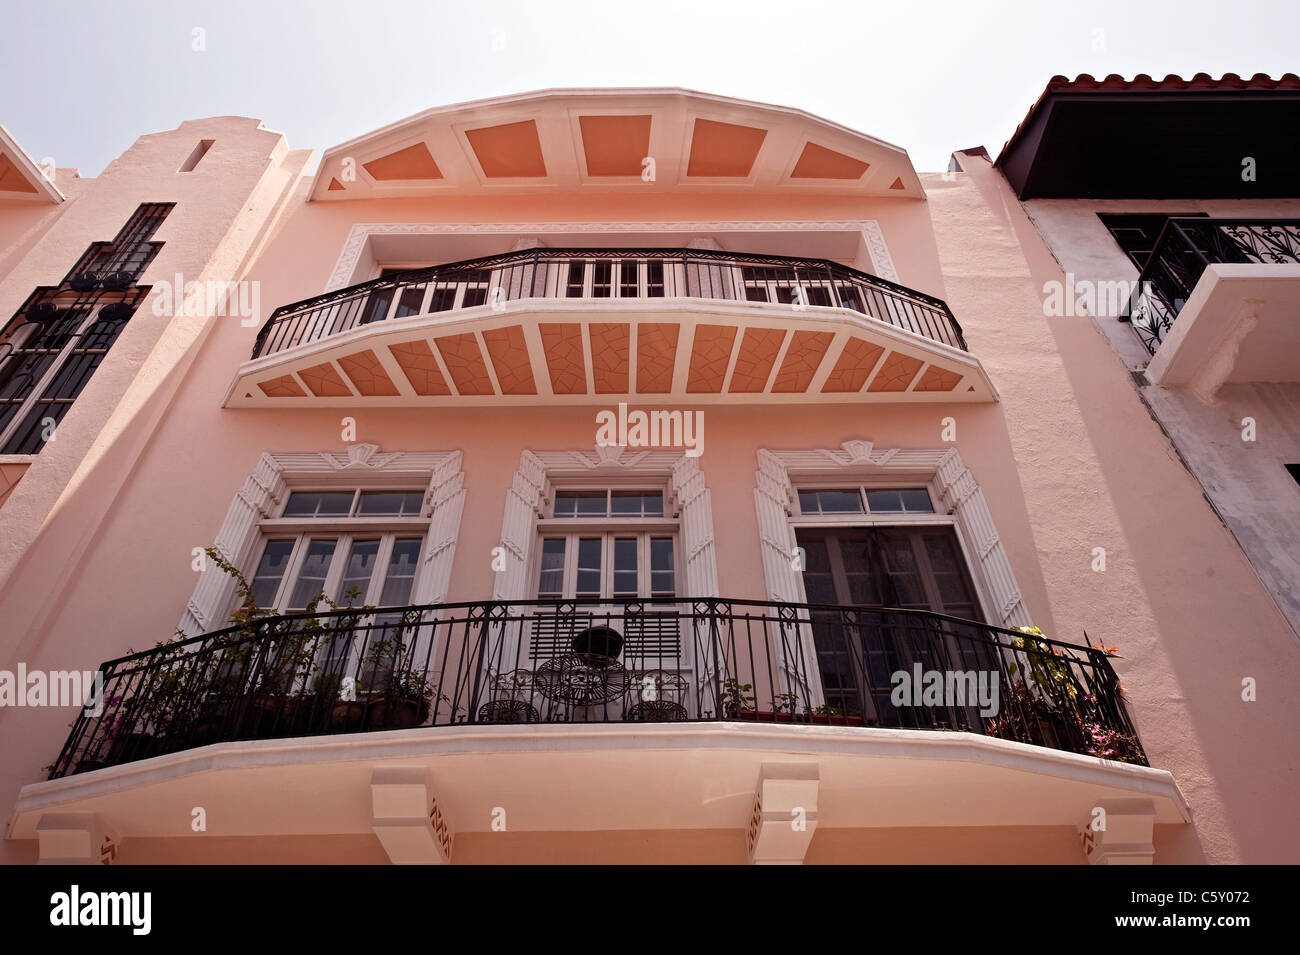 La ville de Panama Casco Viejo vieilles maisons coloniales Banque D'Images